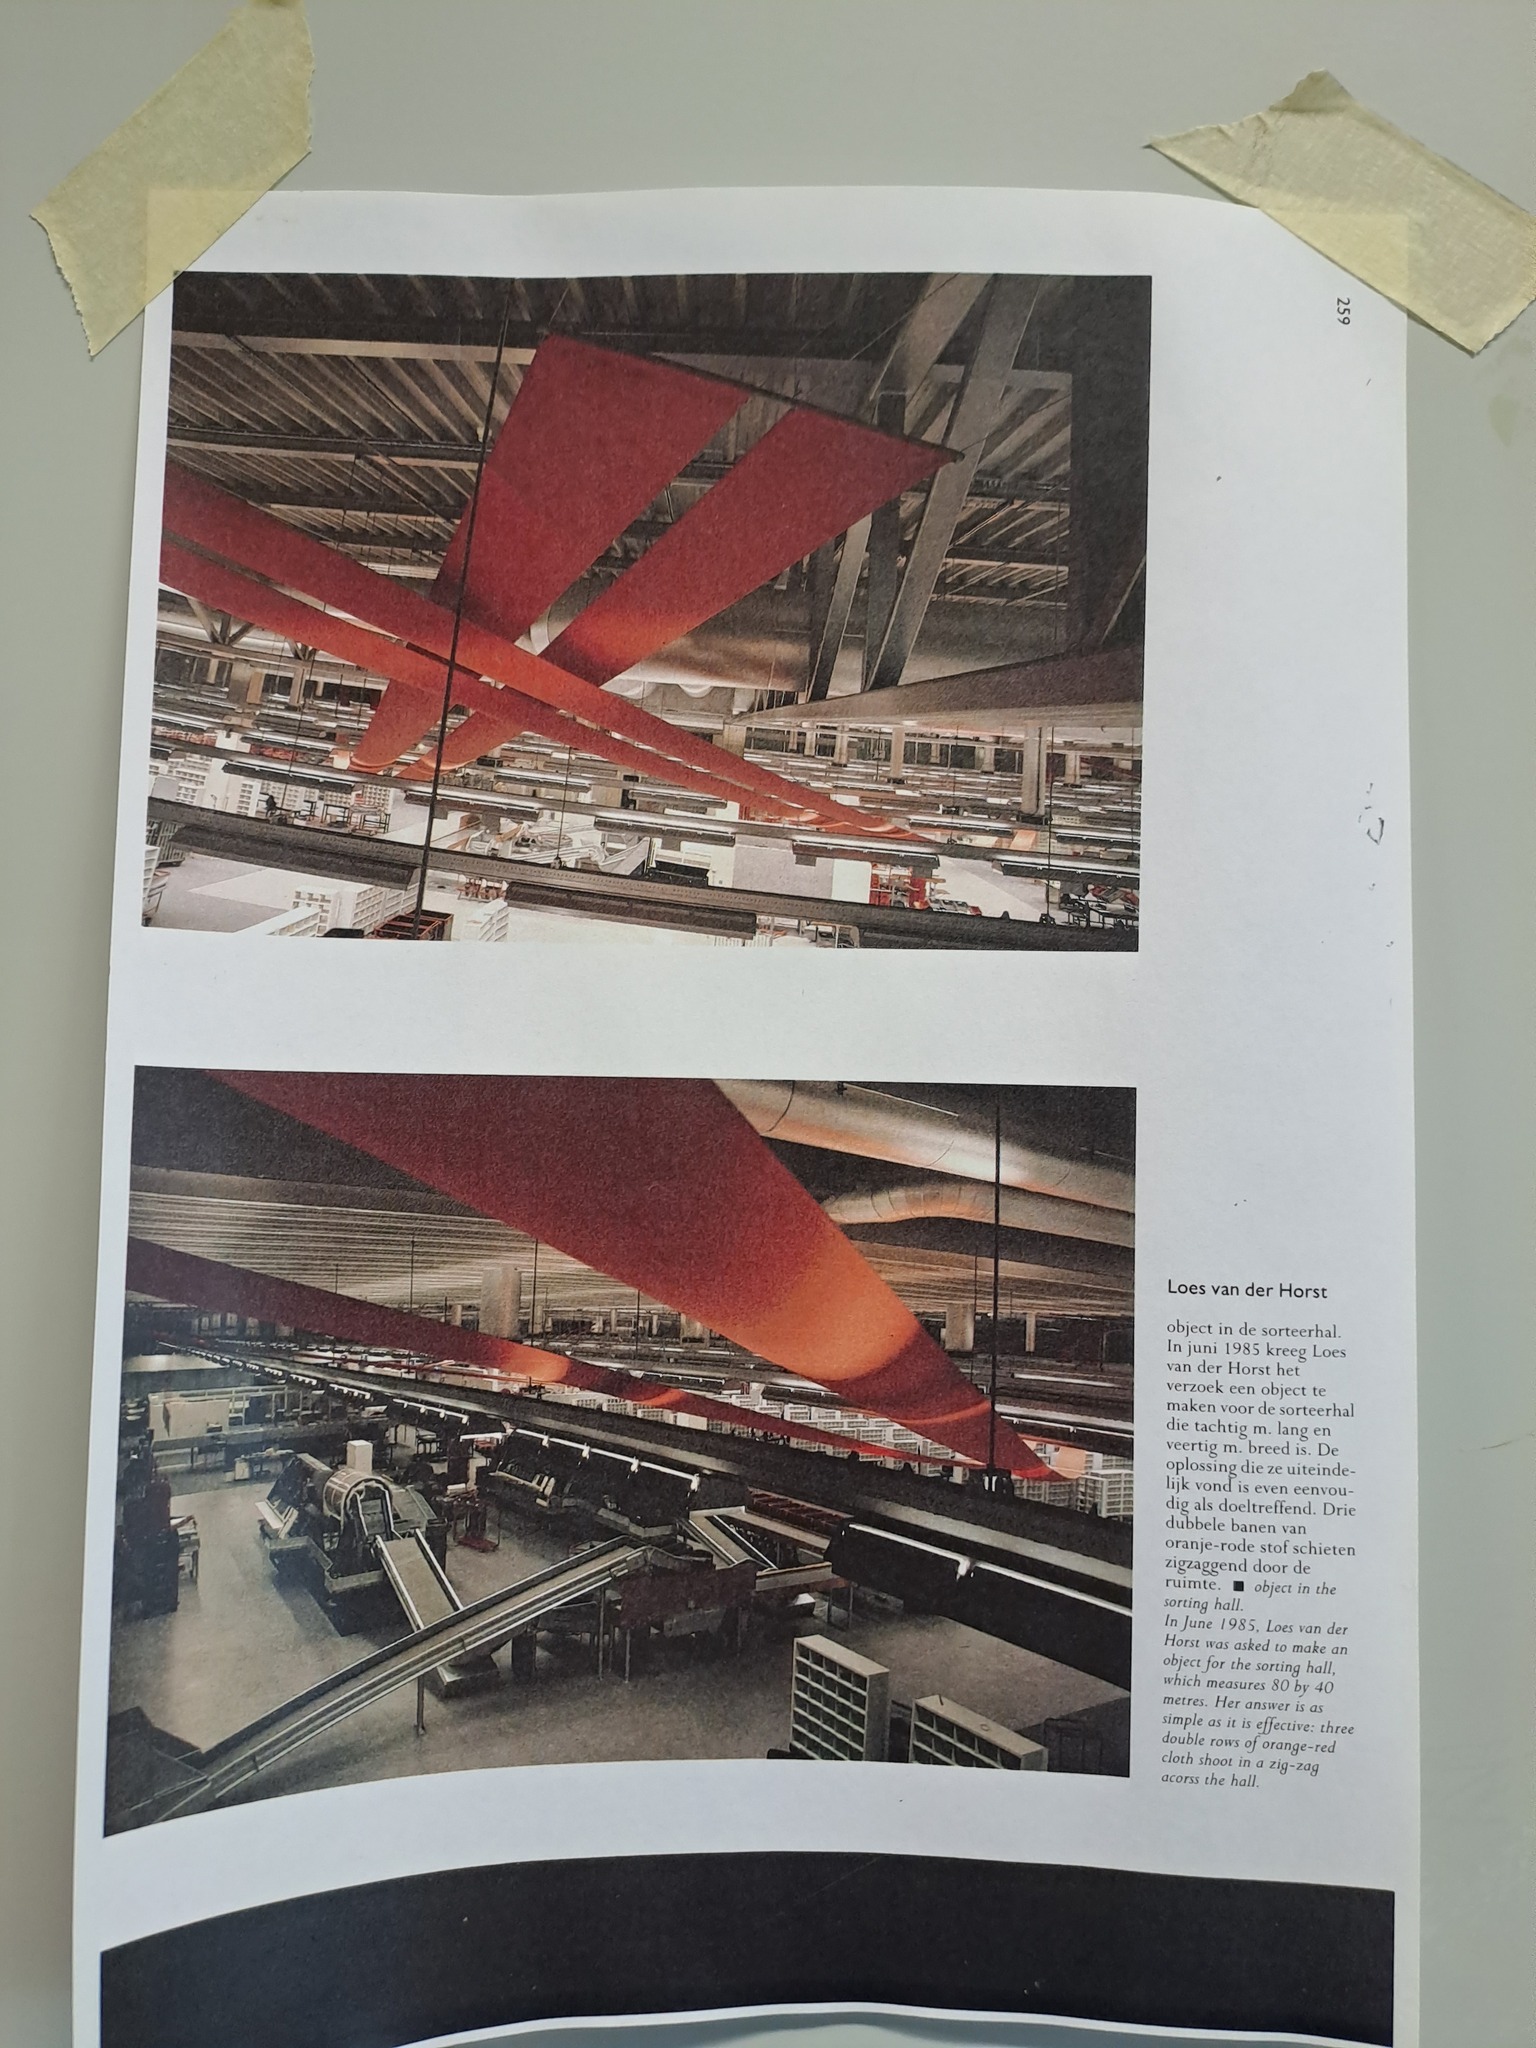 Ik zag tijdens mijn wandeling door de kunstacademie dit printje opgeplakt over kunstenaar Loes van der Horst die maakte in opdracht van de PTT in 1987 een object voor de sorteerhal te maken, drie dubbele oranje/rode banen stof 80 m. lang en 40 m. breed